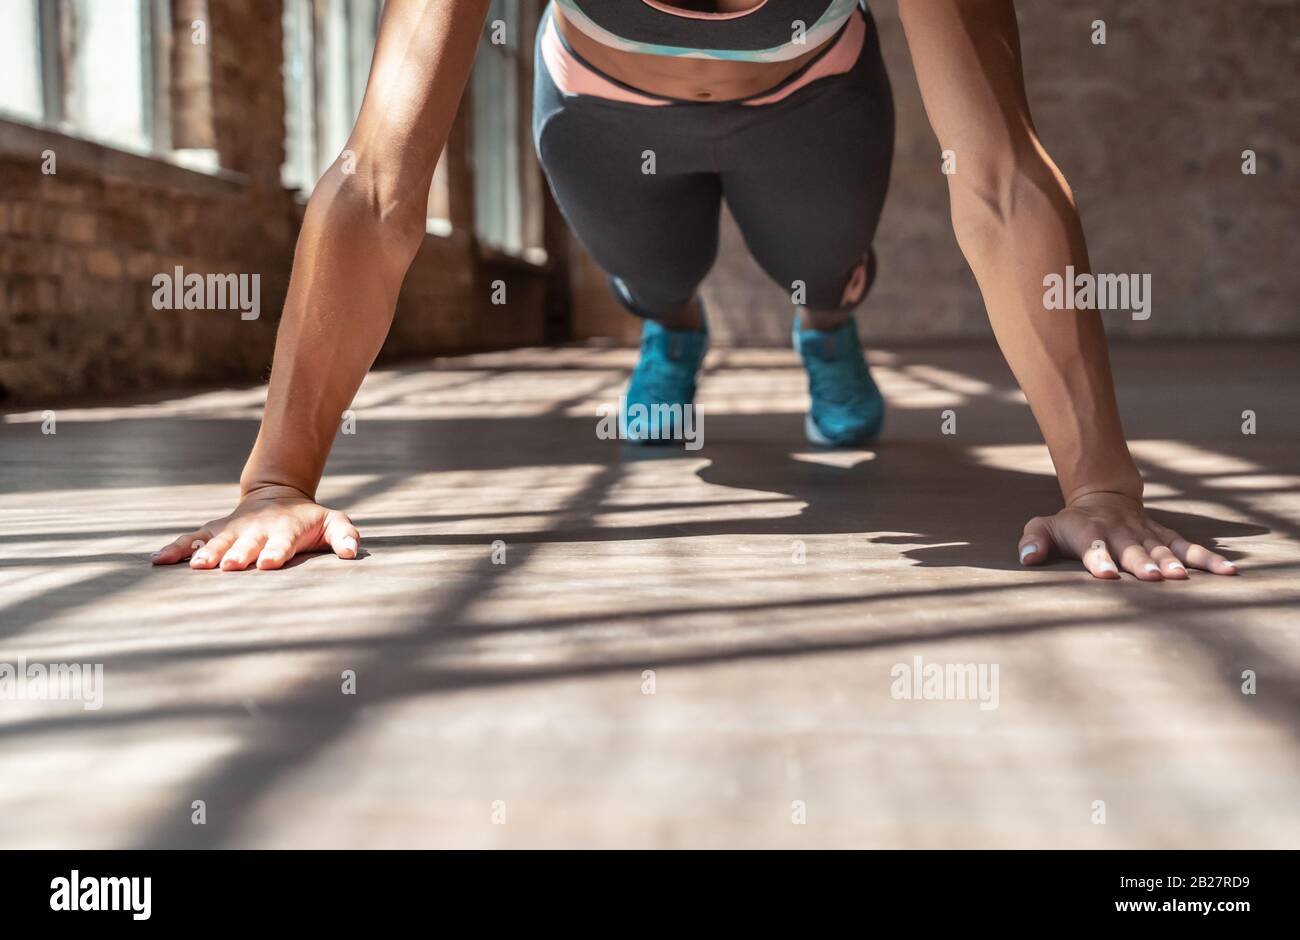 Closup junge sportliche Frau übt Hatha Yogaplanke stellen einen gesunden Lebensstil dar. Stockfoto